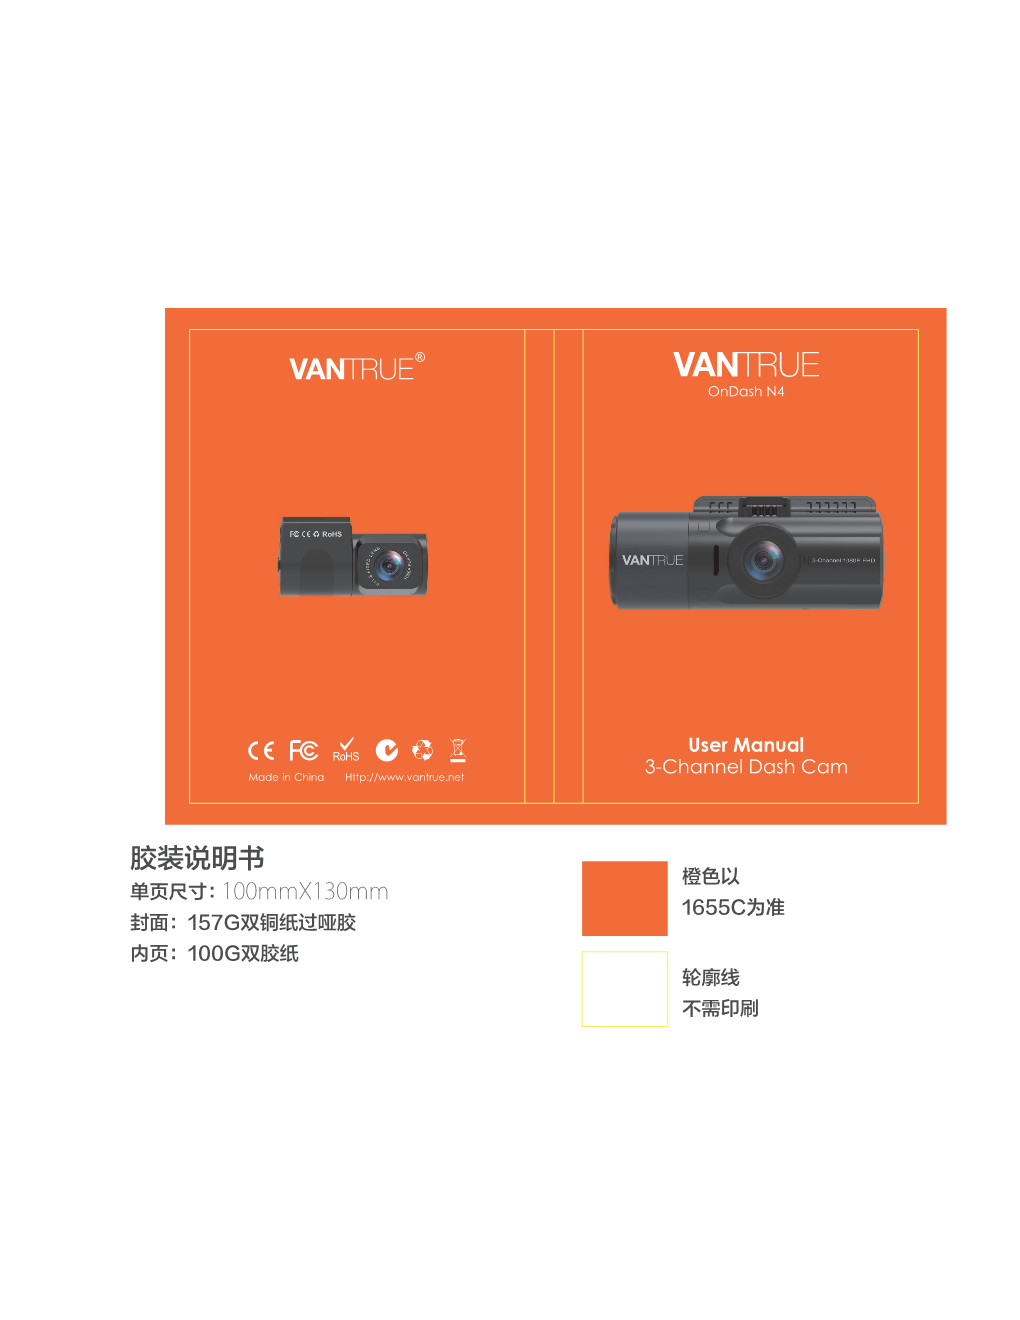 Vantrue N4 Dash Cam User Manual